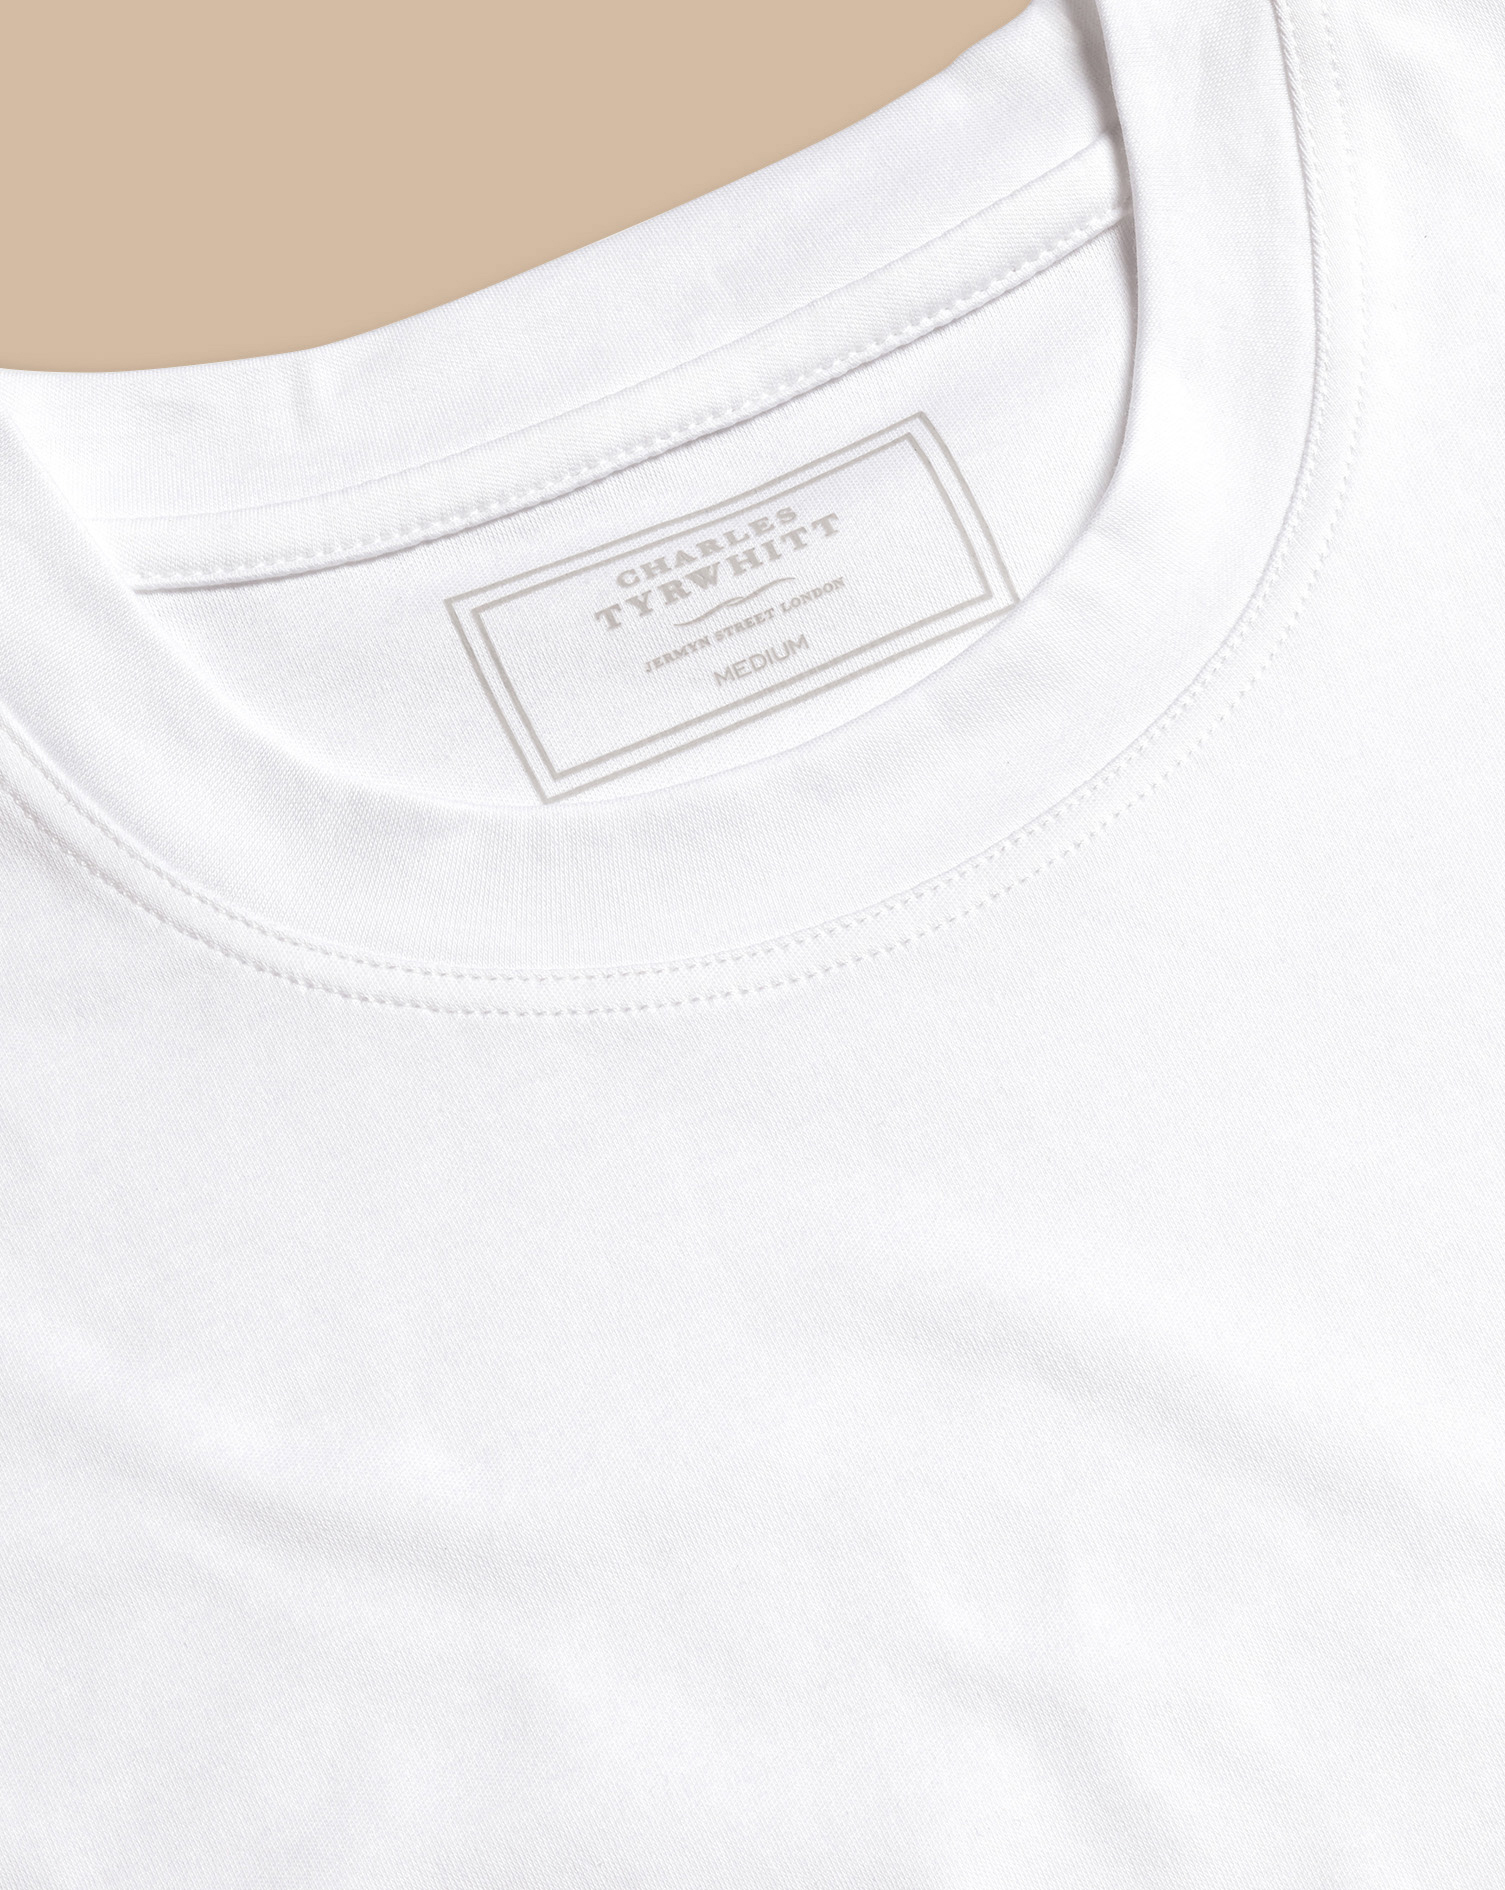 Charles Tyrwhitt Cotton Tyrwhitt T-shirt In White